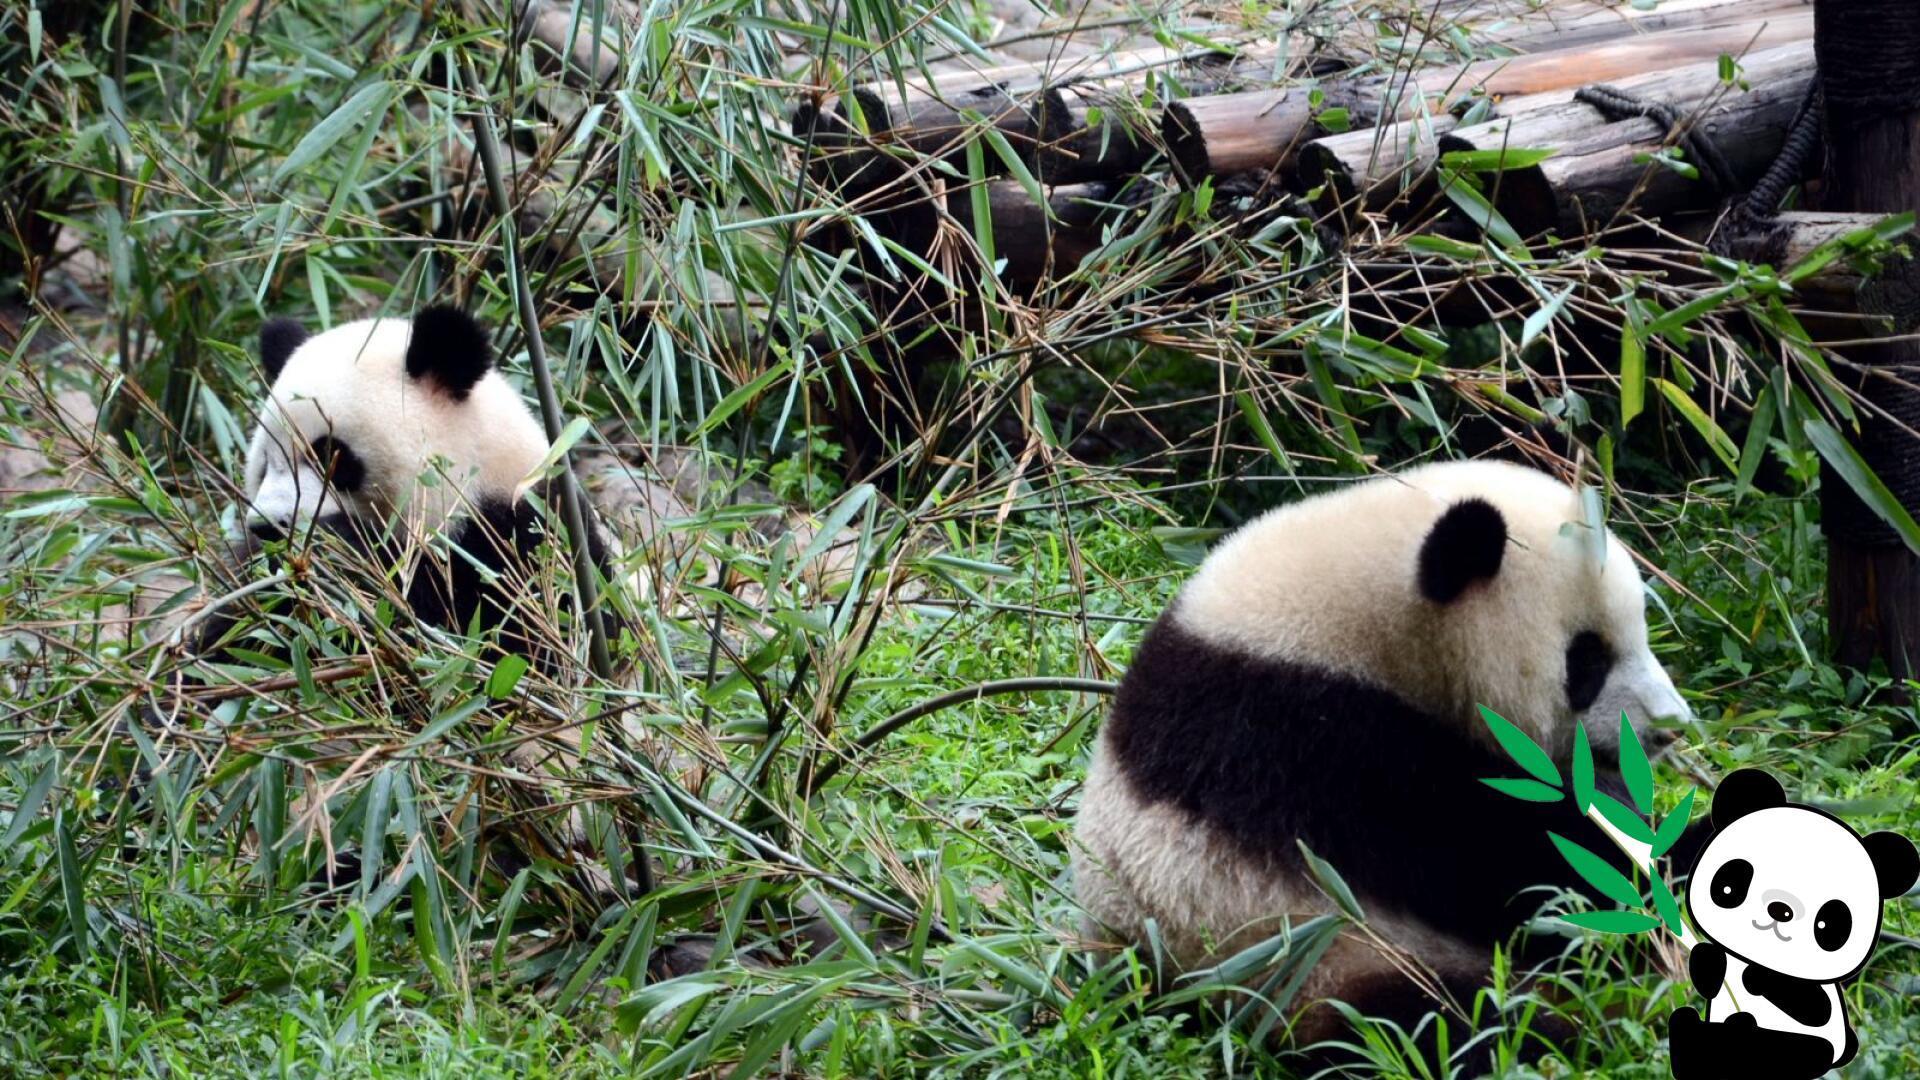 外媒:中国野生大熊猫生存环境改善 仍需更多保护